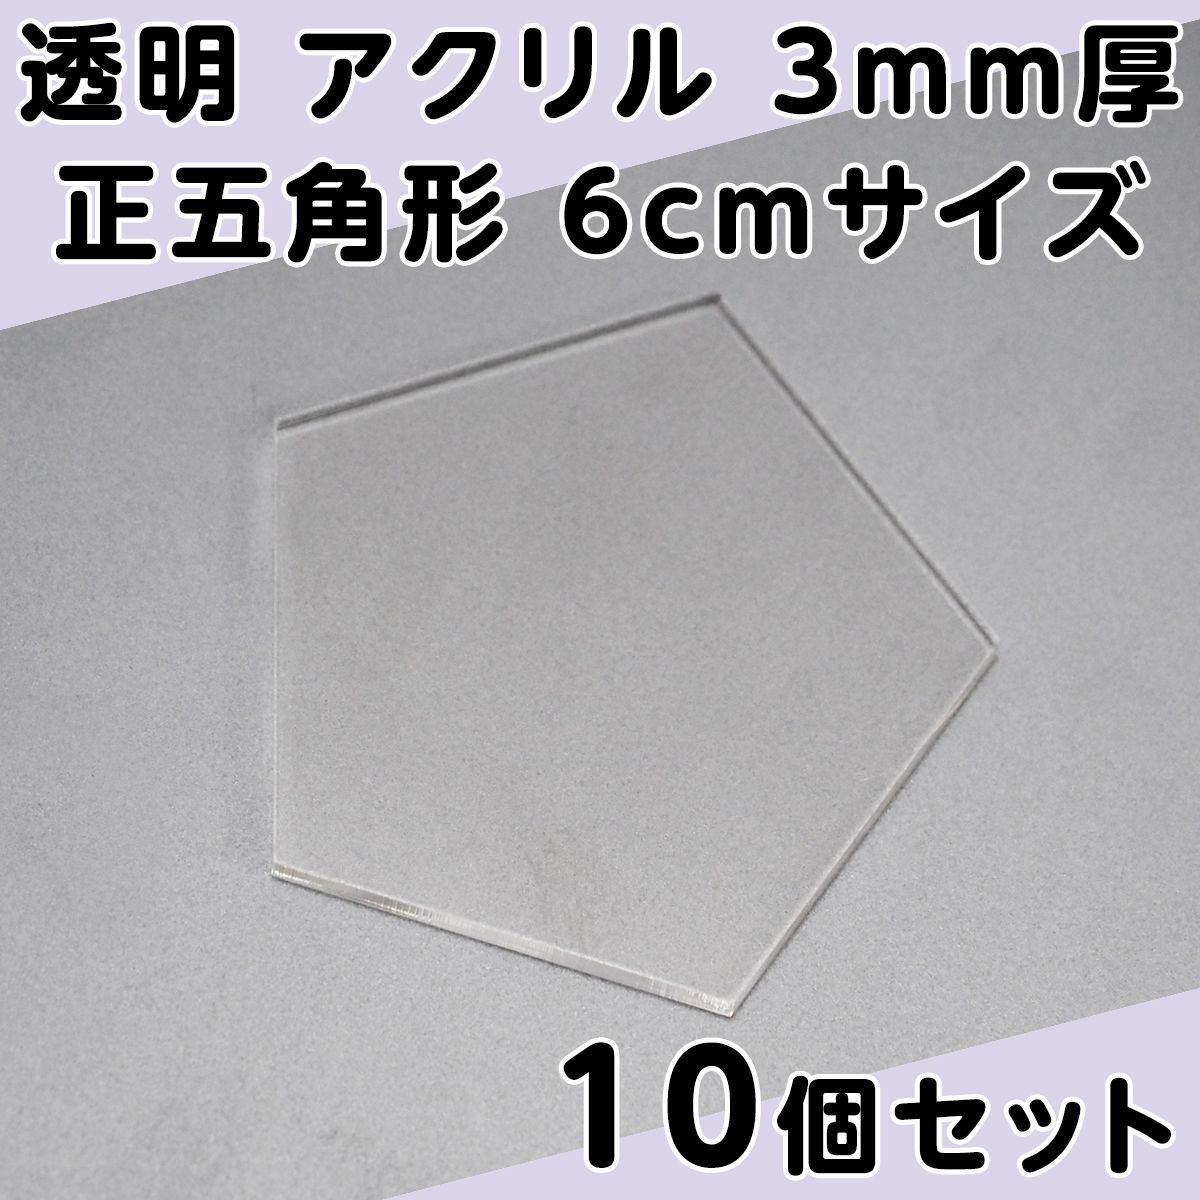 透明 アクリル 3mm厚 正五角形 6cmサイズ 10個セット - メルカリ